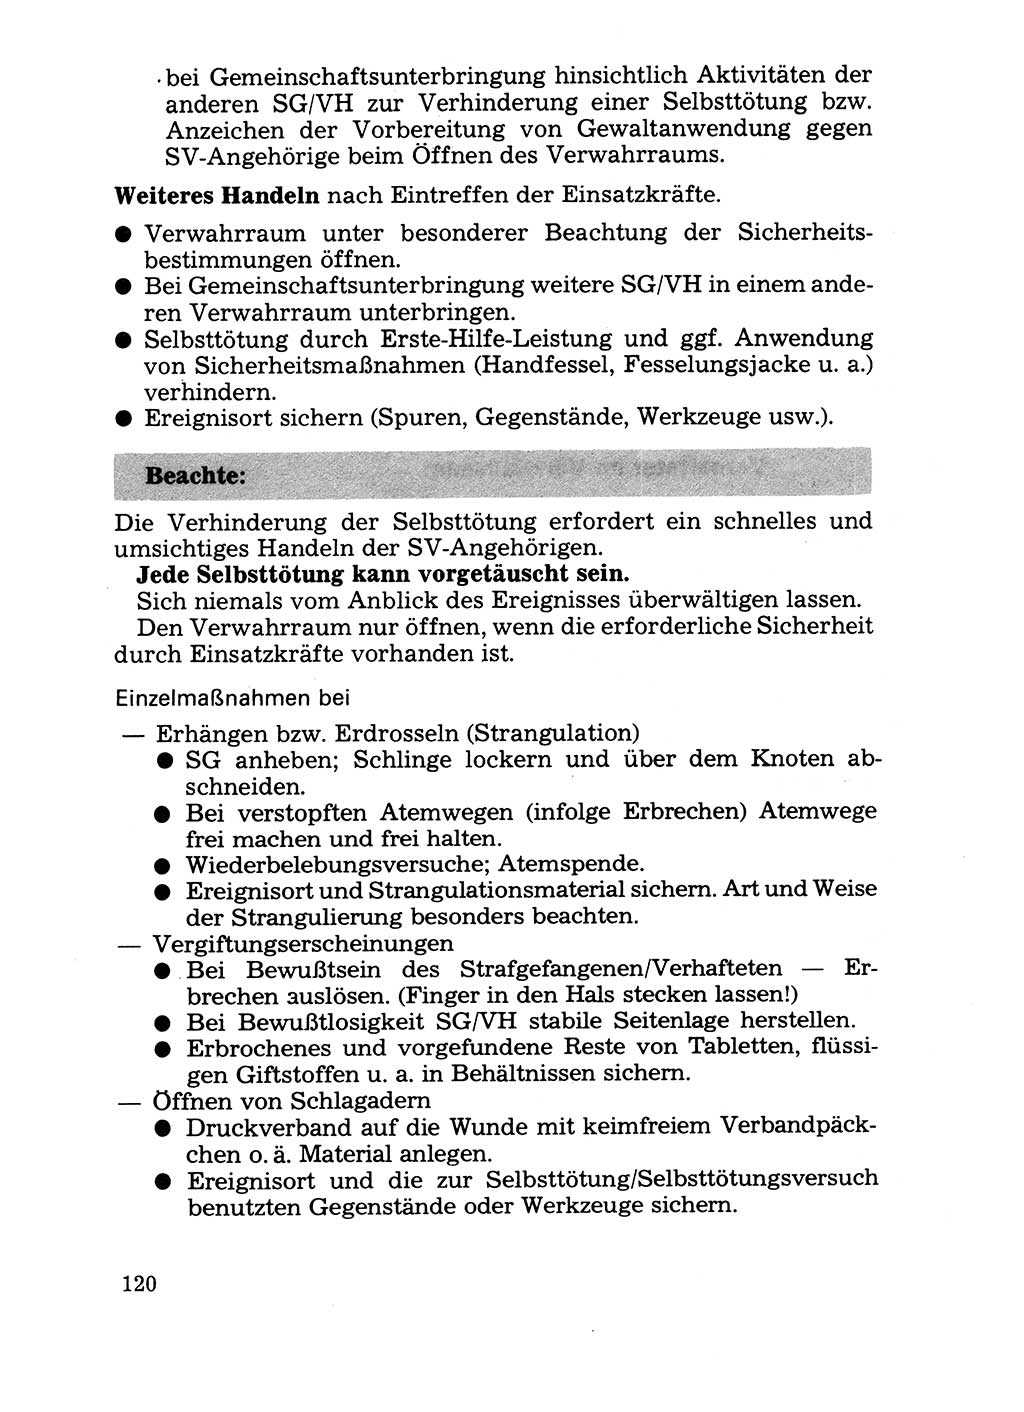 Handbuch für operative Dienste, Abteilung Strafvollzug (SV) [Ministerium des Innern (MdI) Deutsche Demokratische Republik (DDR)] 1981, Seite 120 (Hb. op. D. Abt. SV MdI DDR 1981, S. 120)